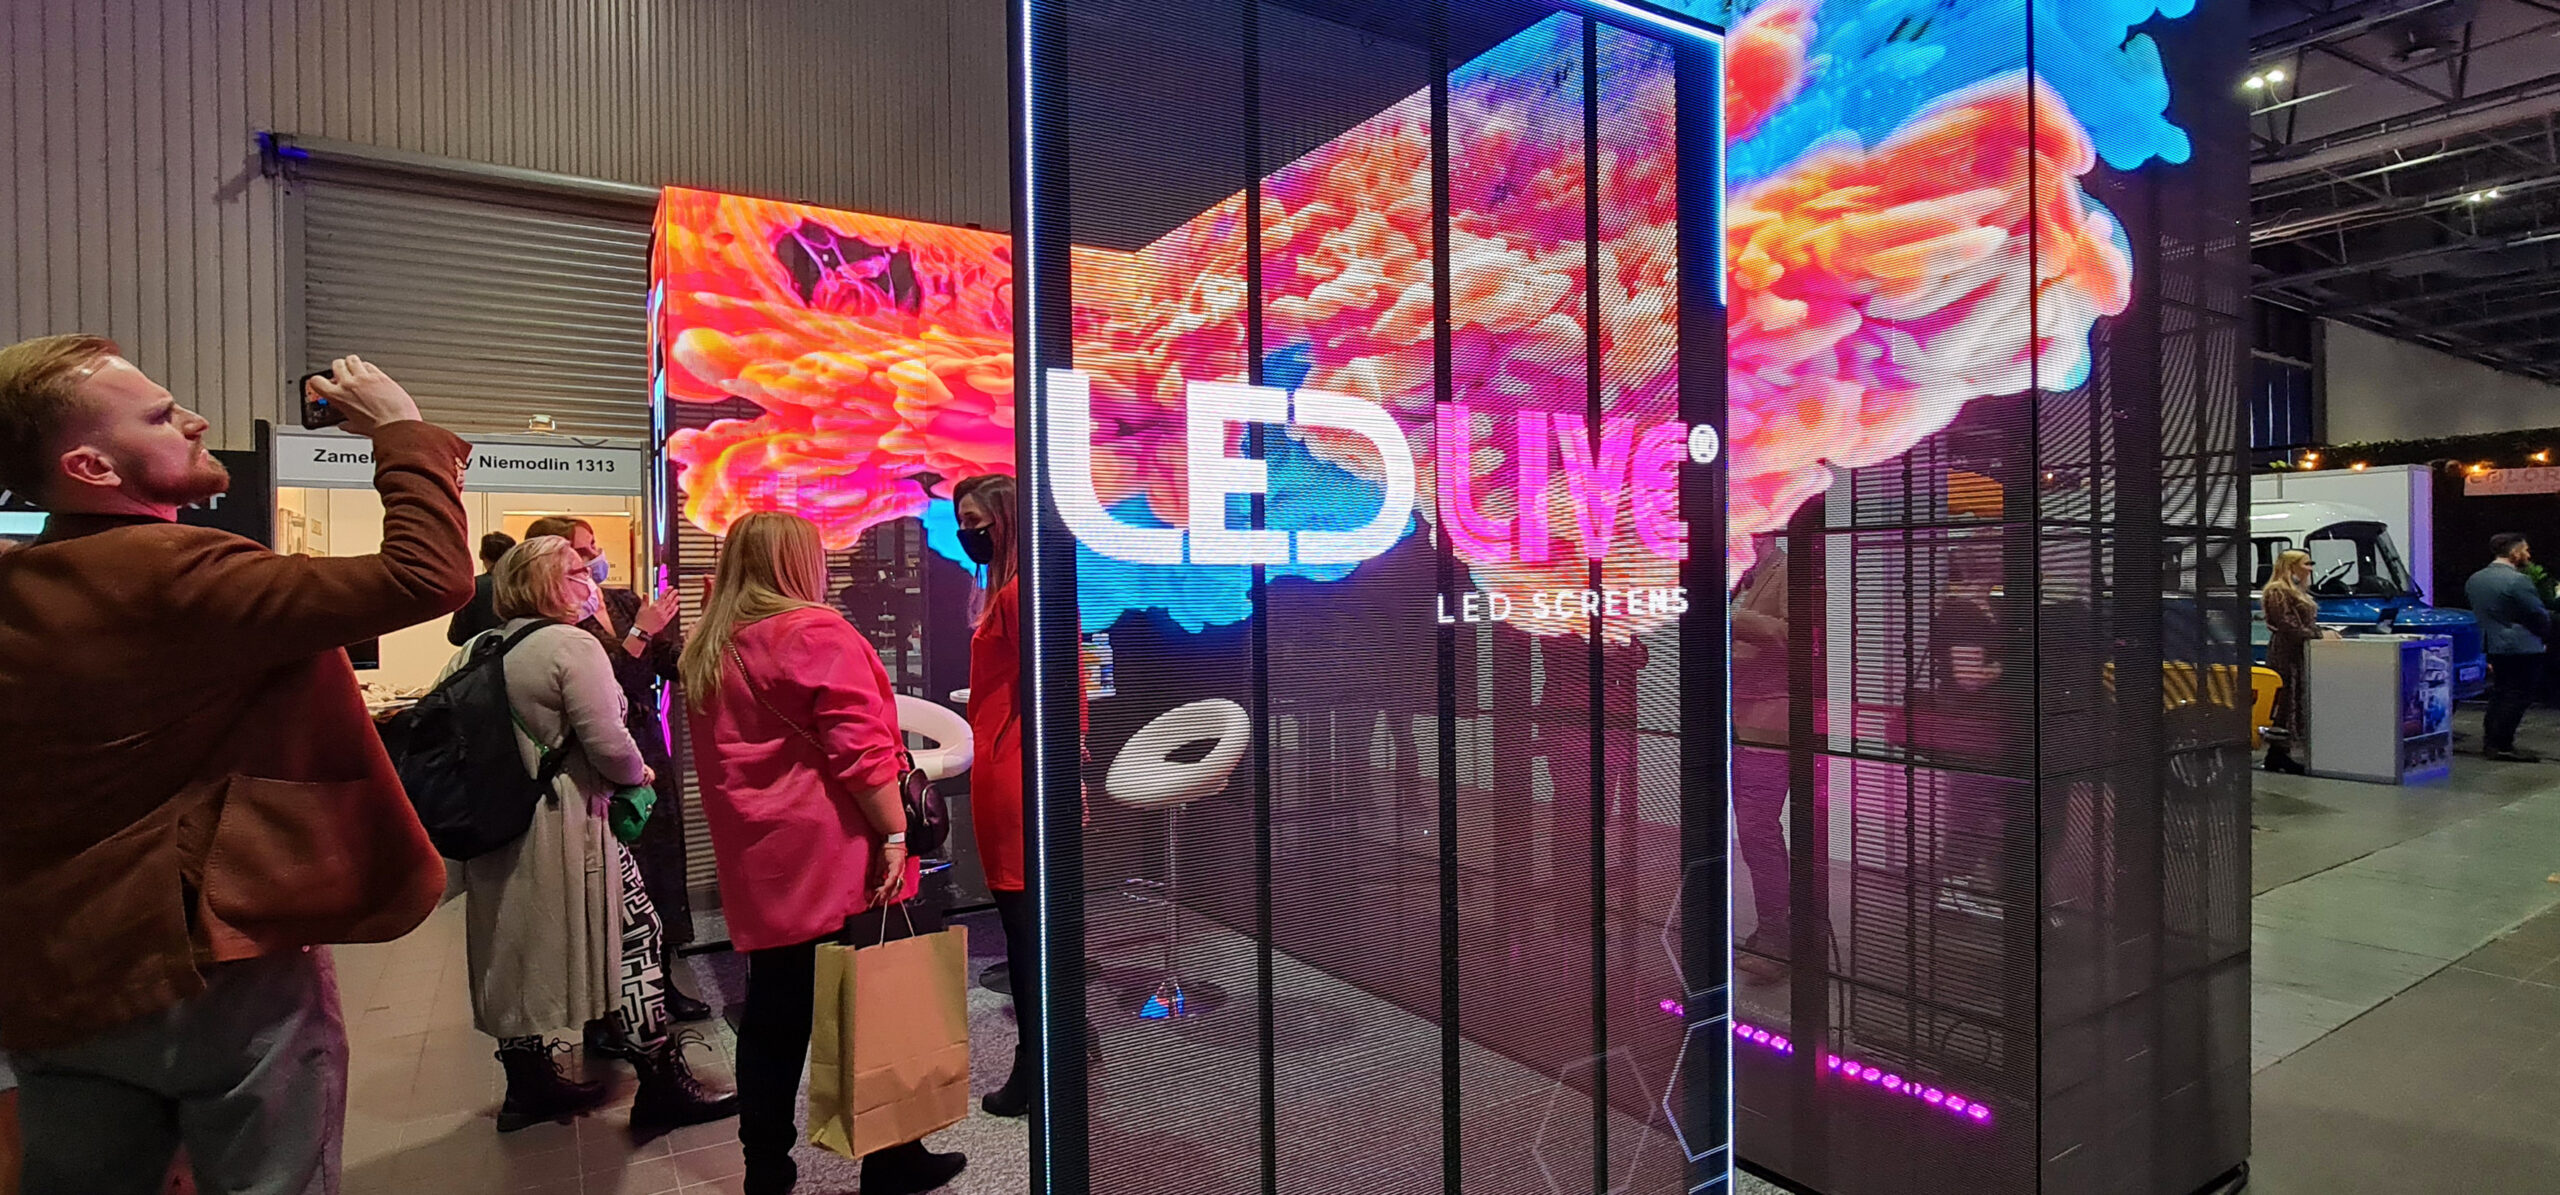 Stoisko ekspozycyjne w formie narożnika zbudowane z transparentnych ekranów LED podczas Forum Branży Eventowej 2021 w Warszawie